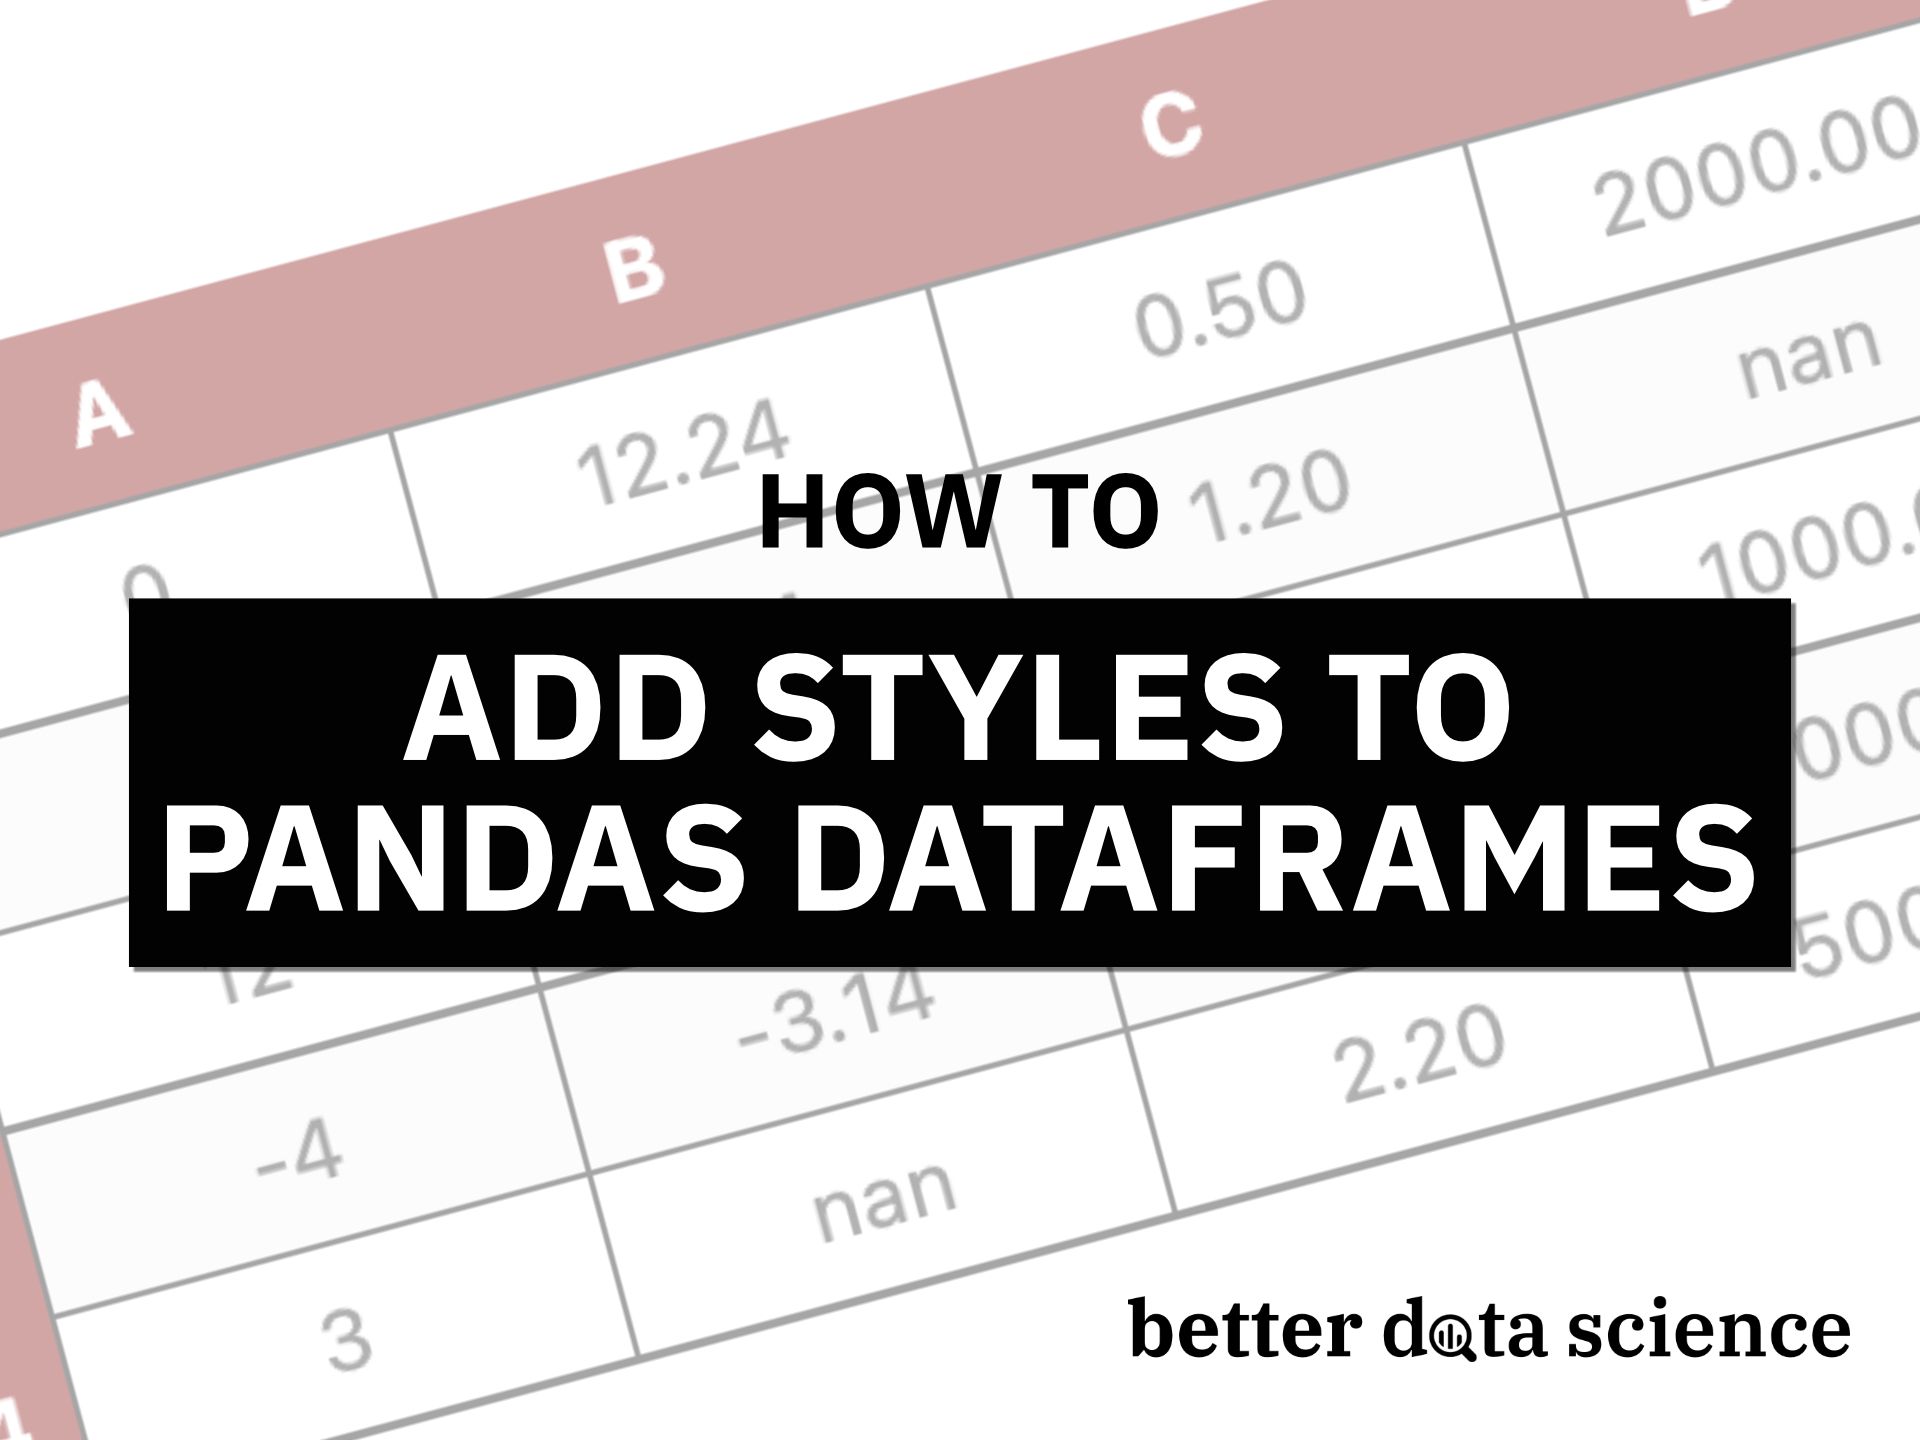 Hãy khám phá hình ảnh về pandas dataframes để tìm hiểu cách tạo bảng dữ liệu hiệu quả với thư viện pandas. Chúng tôi sẽ giúp bạn hiểu rõ hơn về pandas dataframe và cách xử lý dữ liệu một cách chuyên nghiệp.